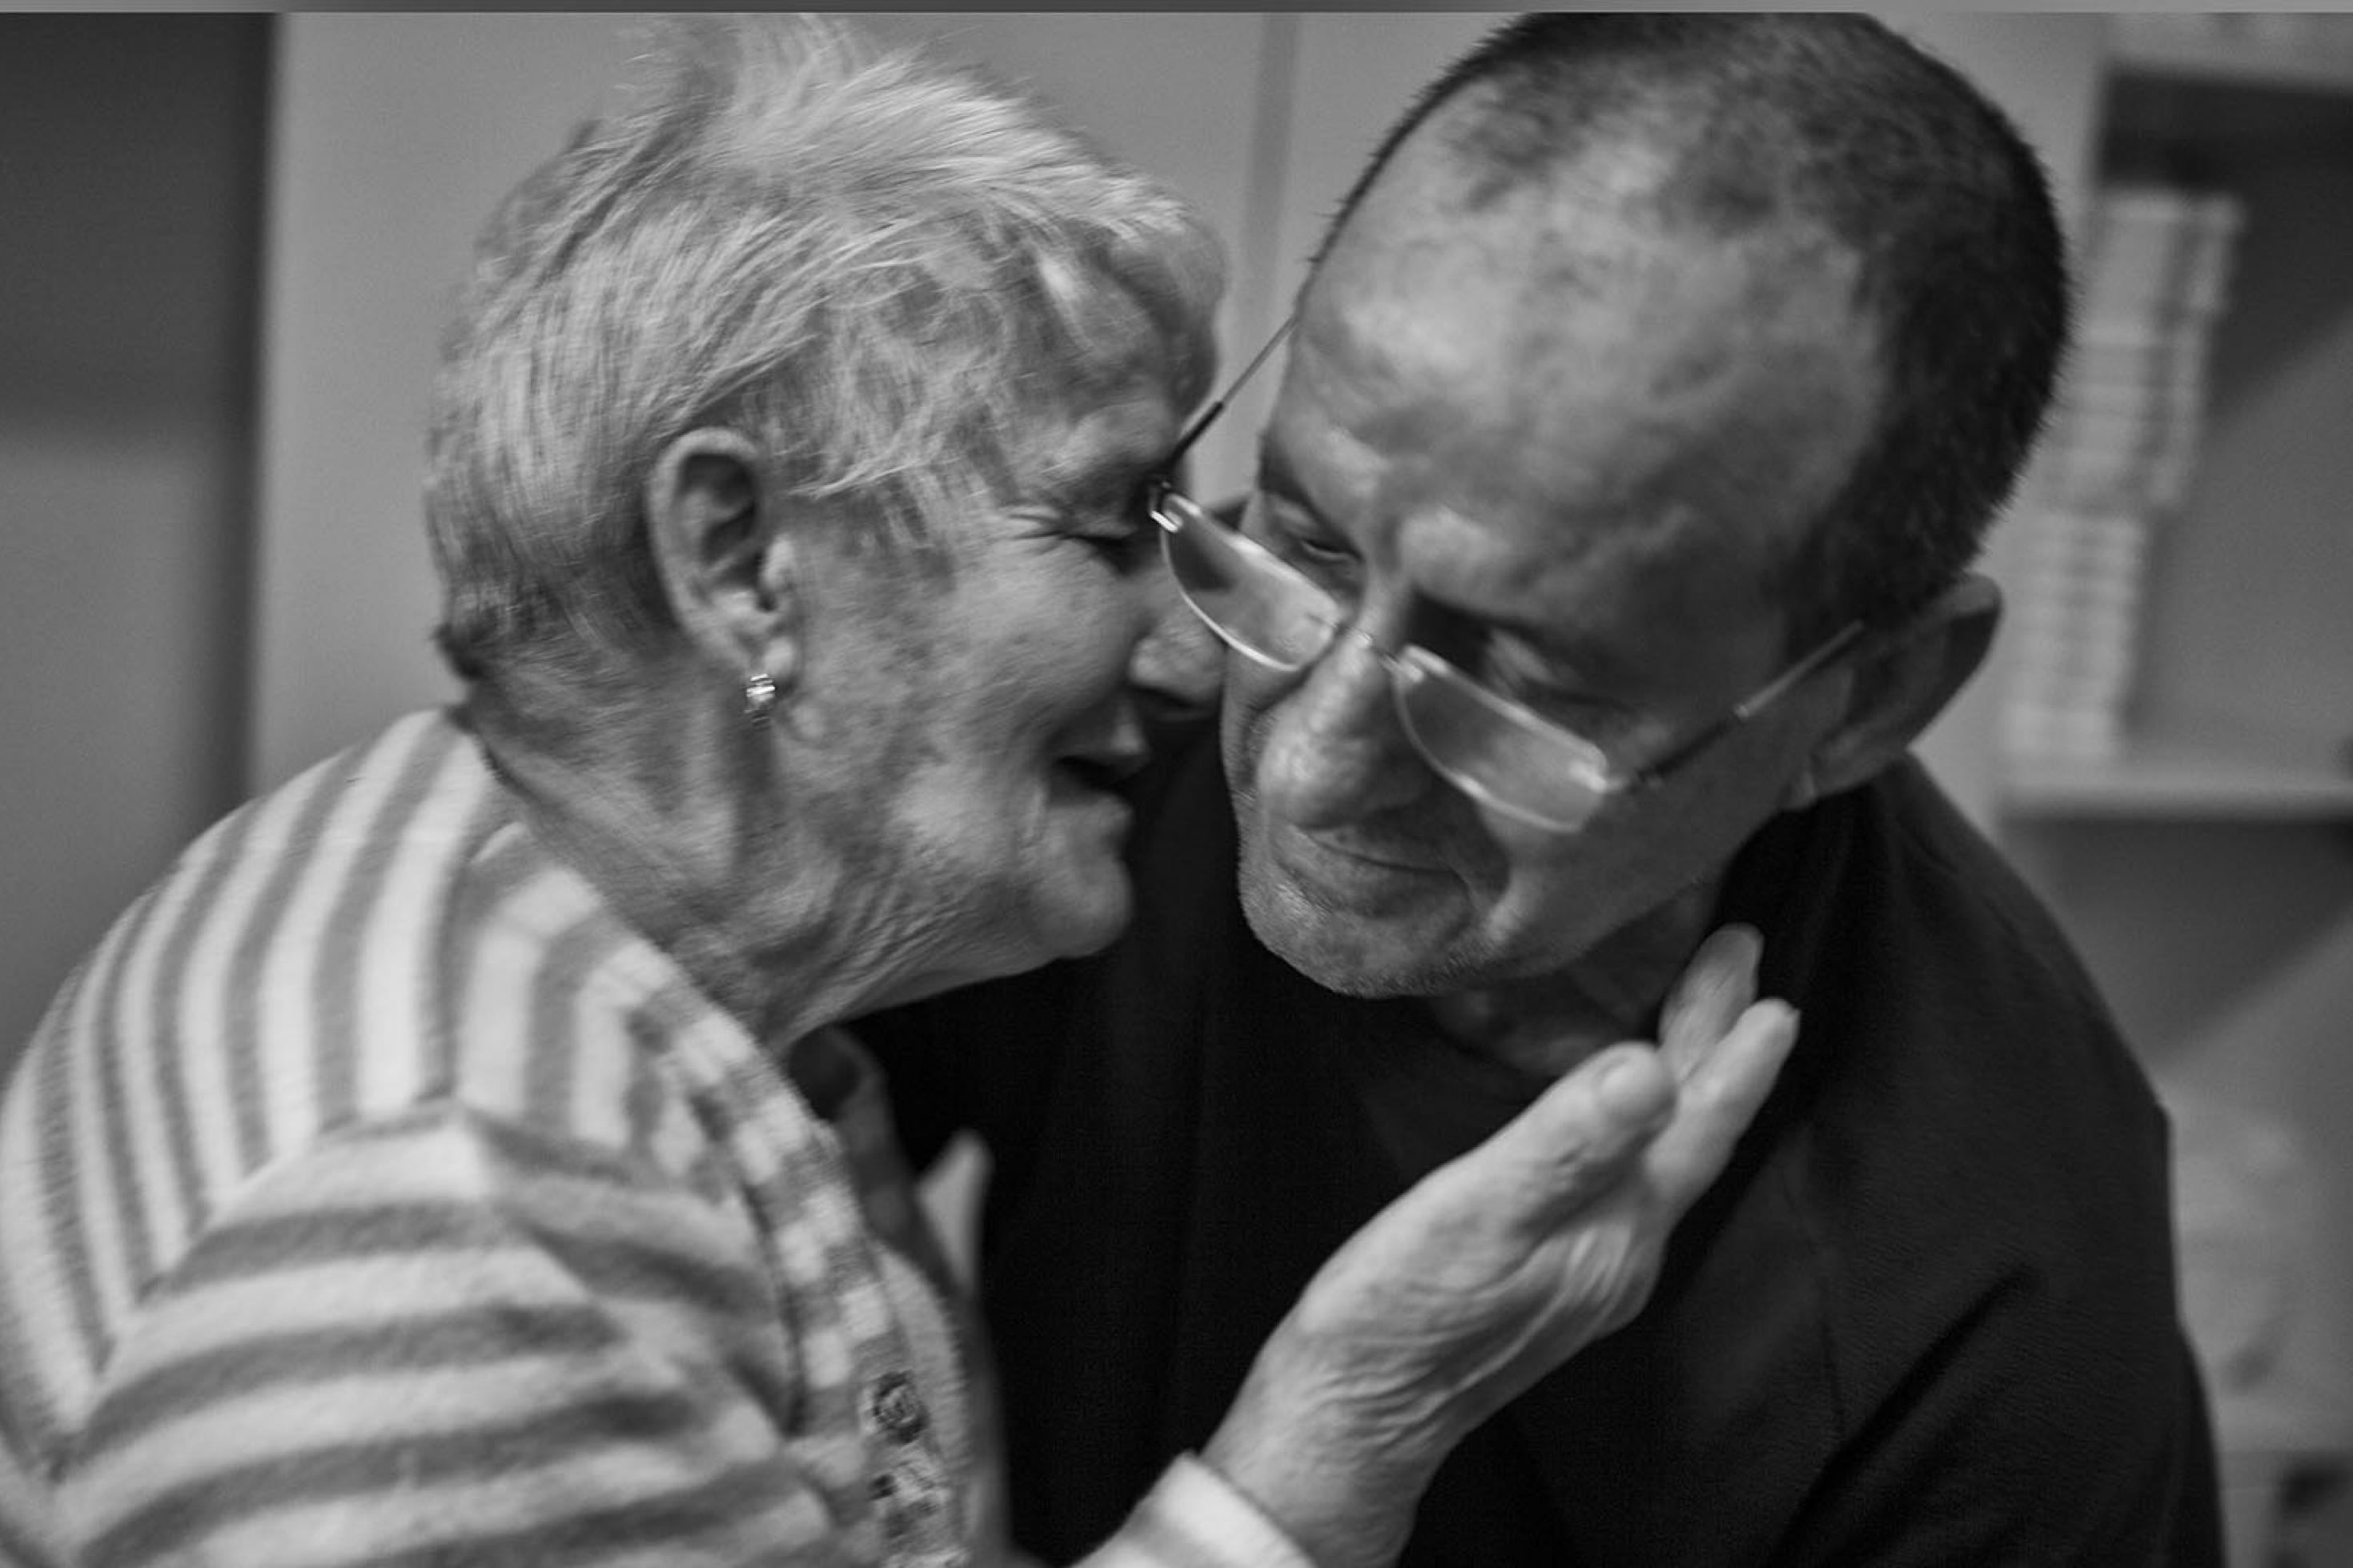 Der Spanier Amadeu pflegt zuhause seine Mutter, die an Alzheimer leidet.